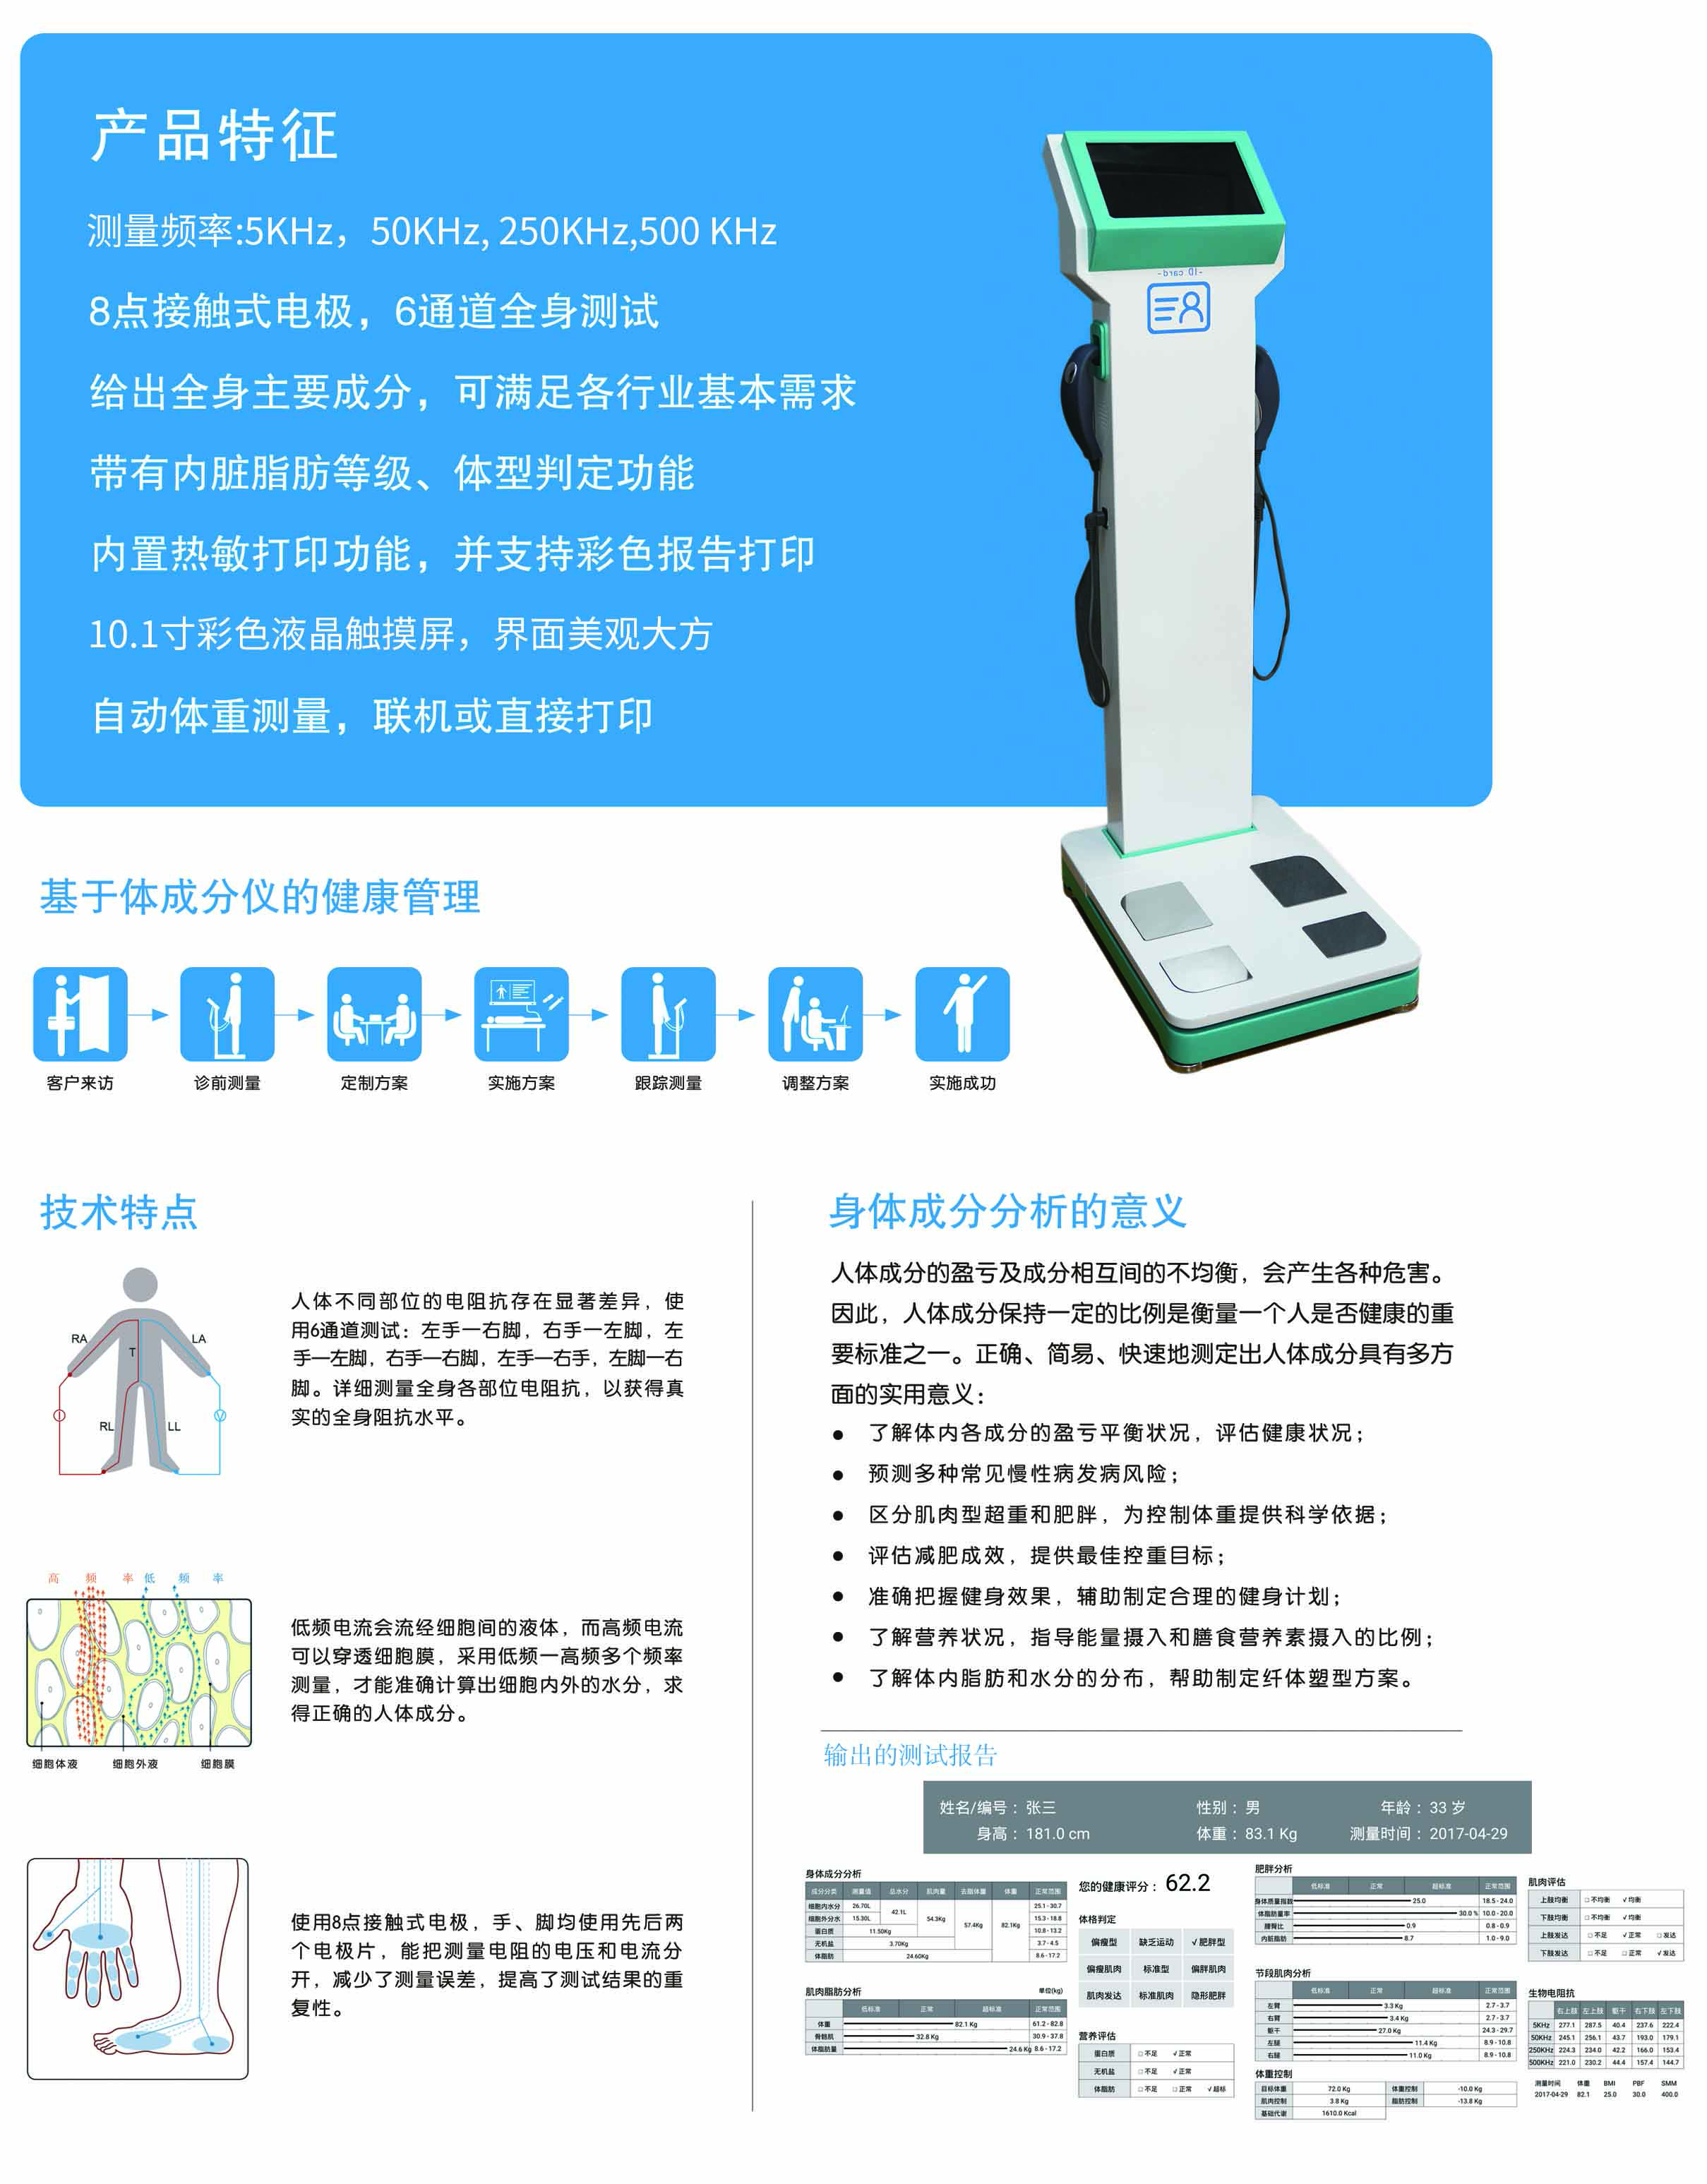 人体成分分析仪（GK-3000）